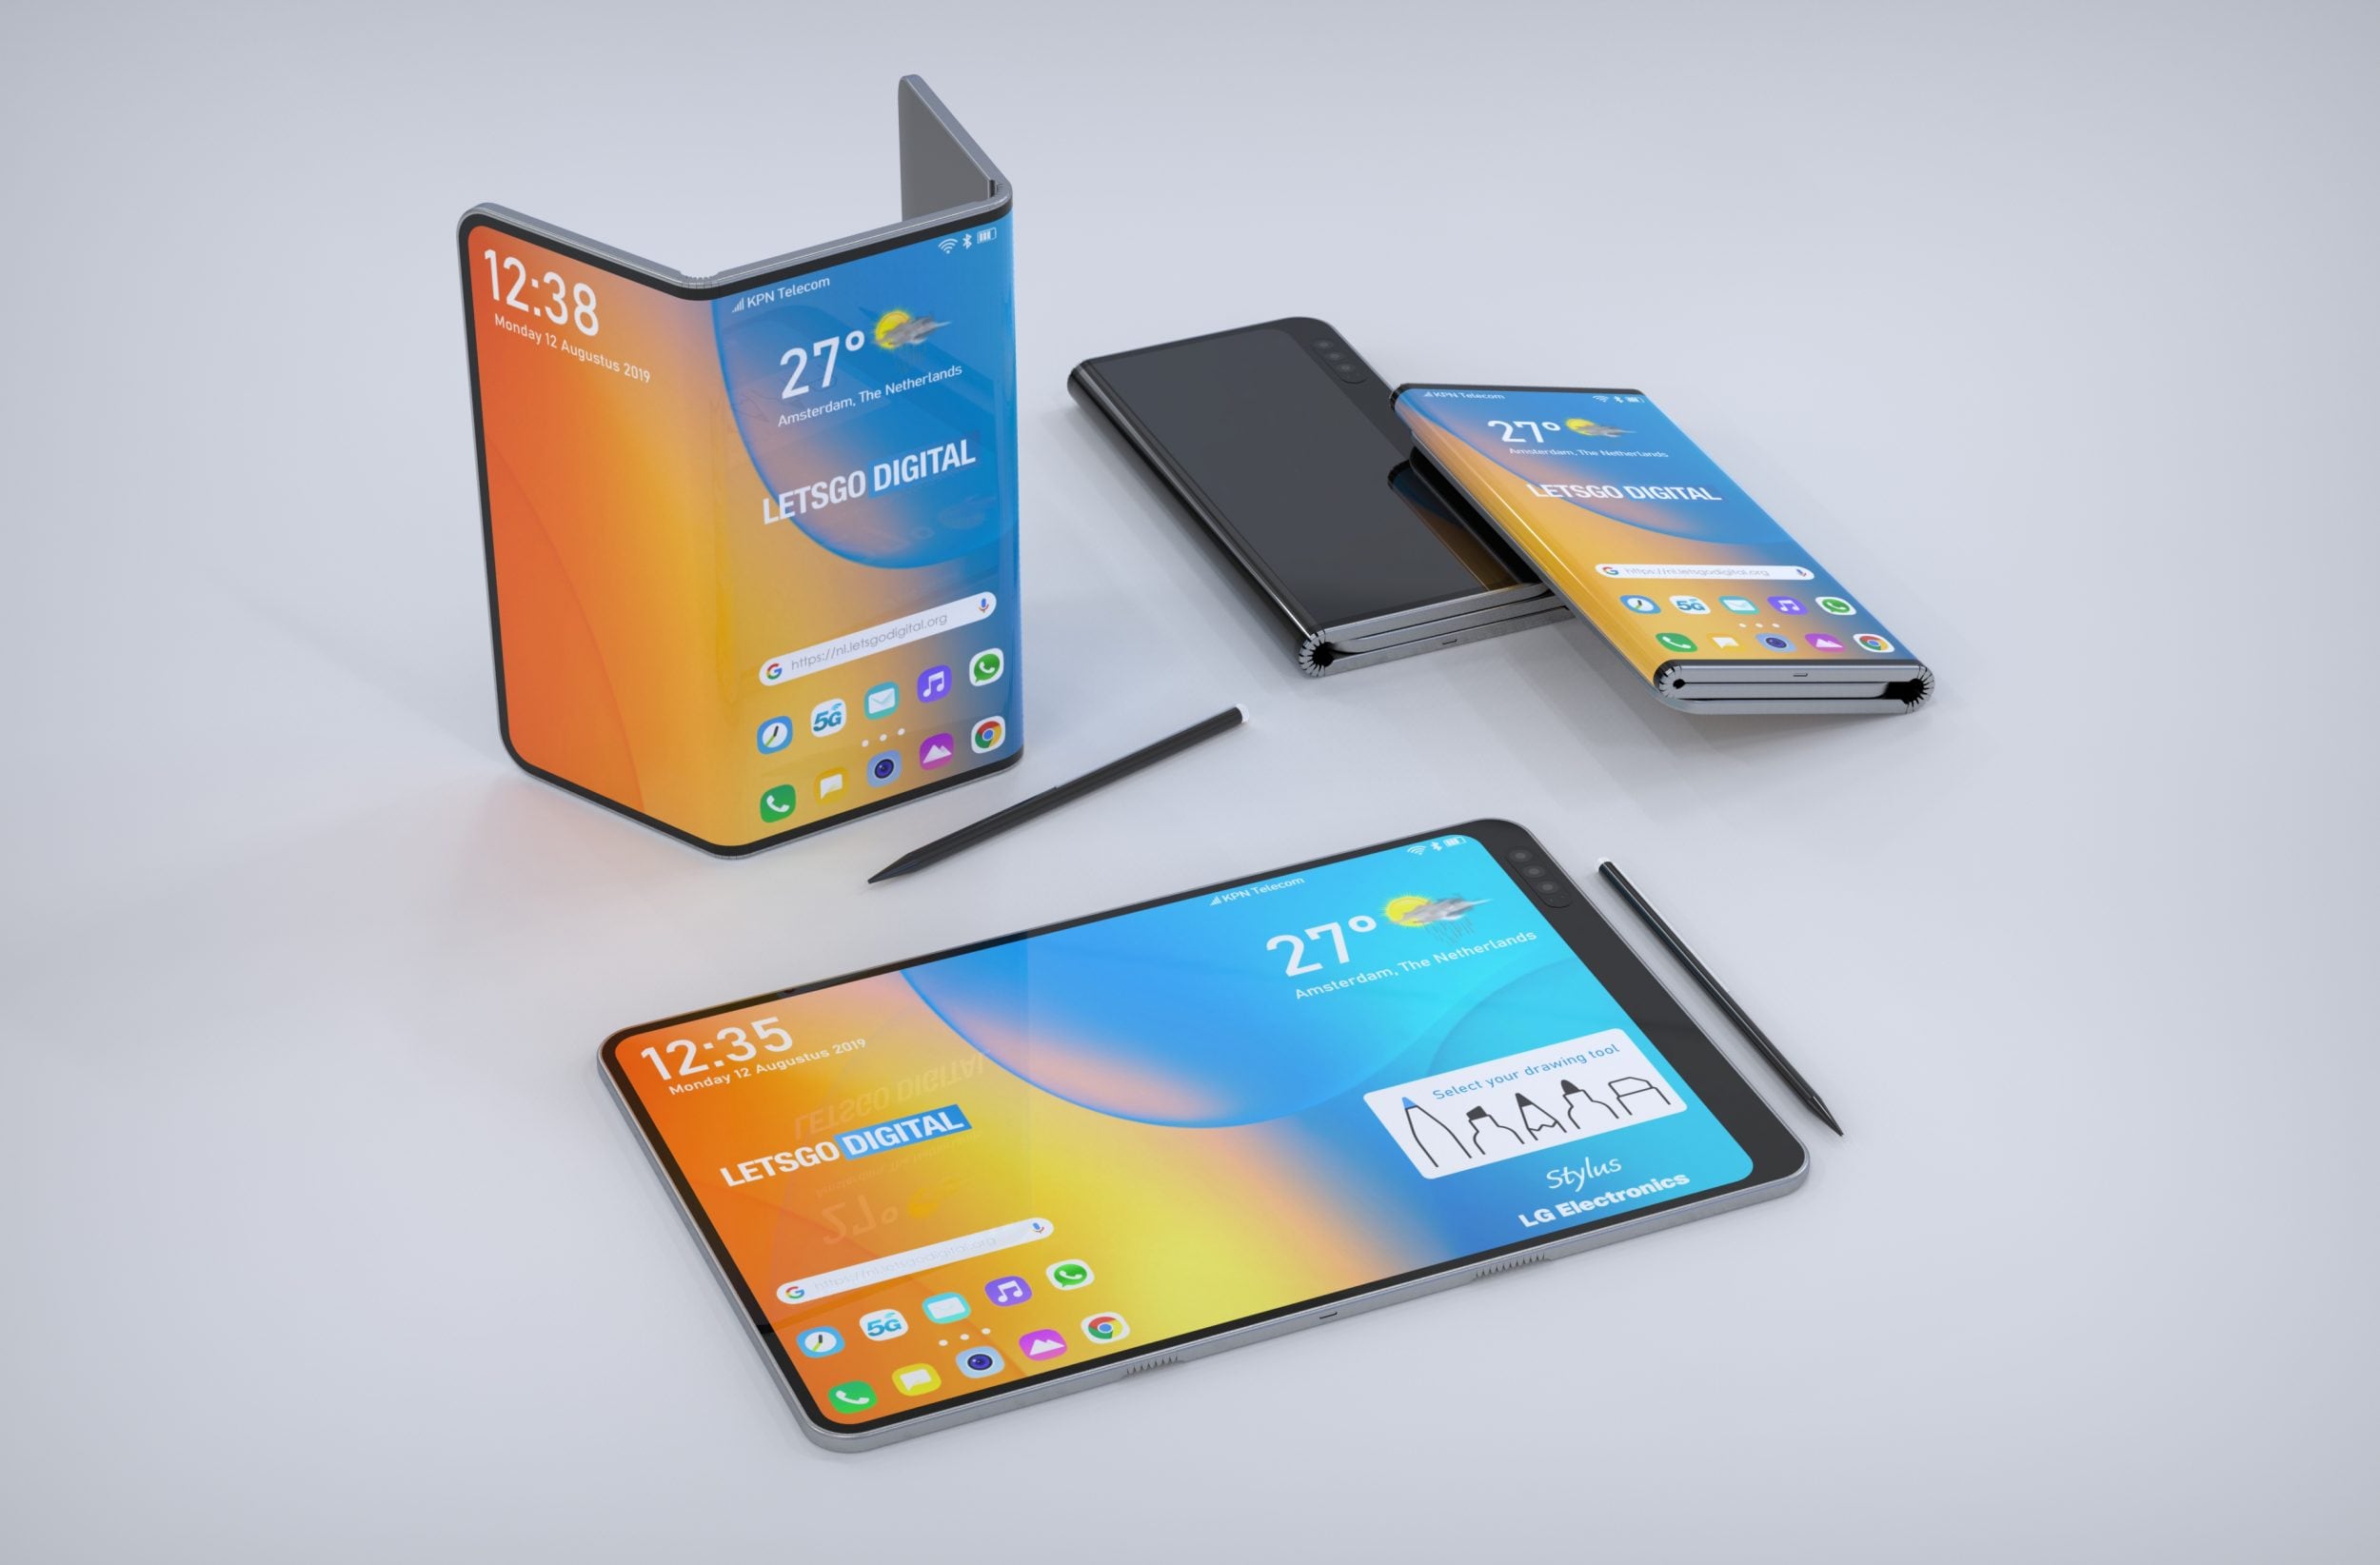 Nuove immagini dagli innovativi brevetti LG: uno smartphone che si piega in 3 (con stilo) e uno arrotolabile (foto)